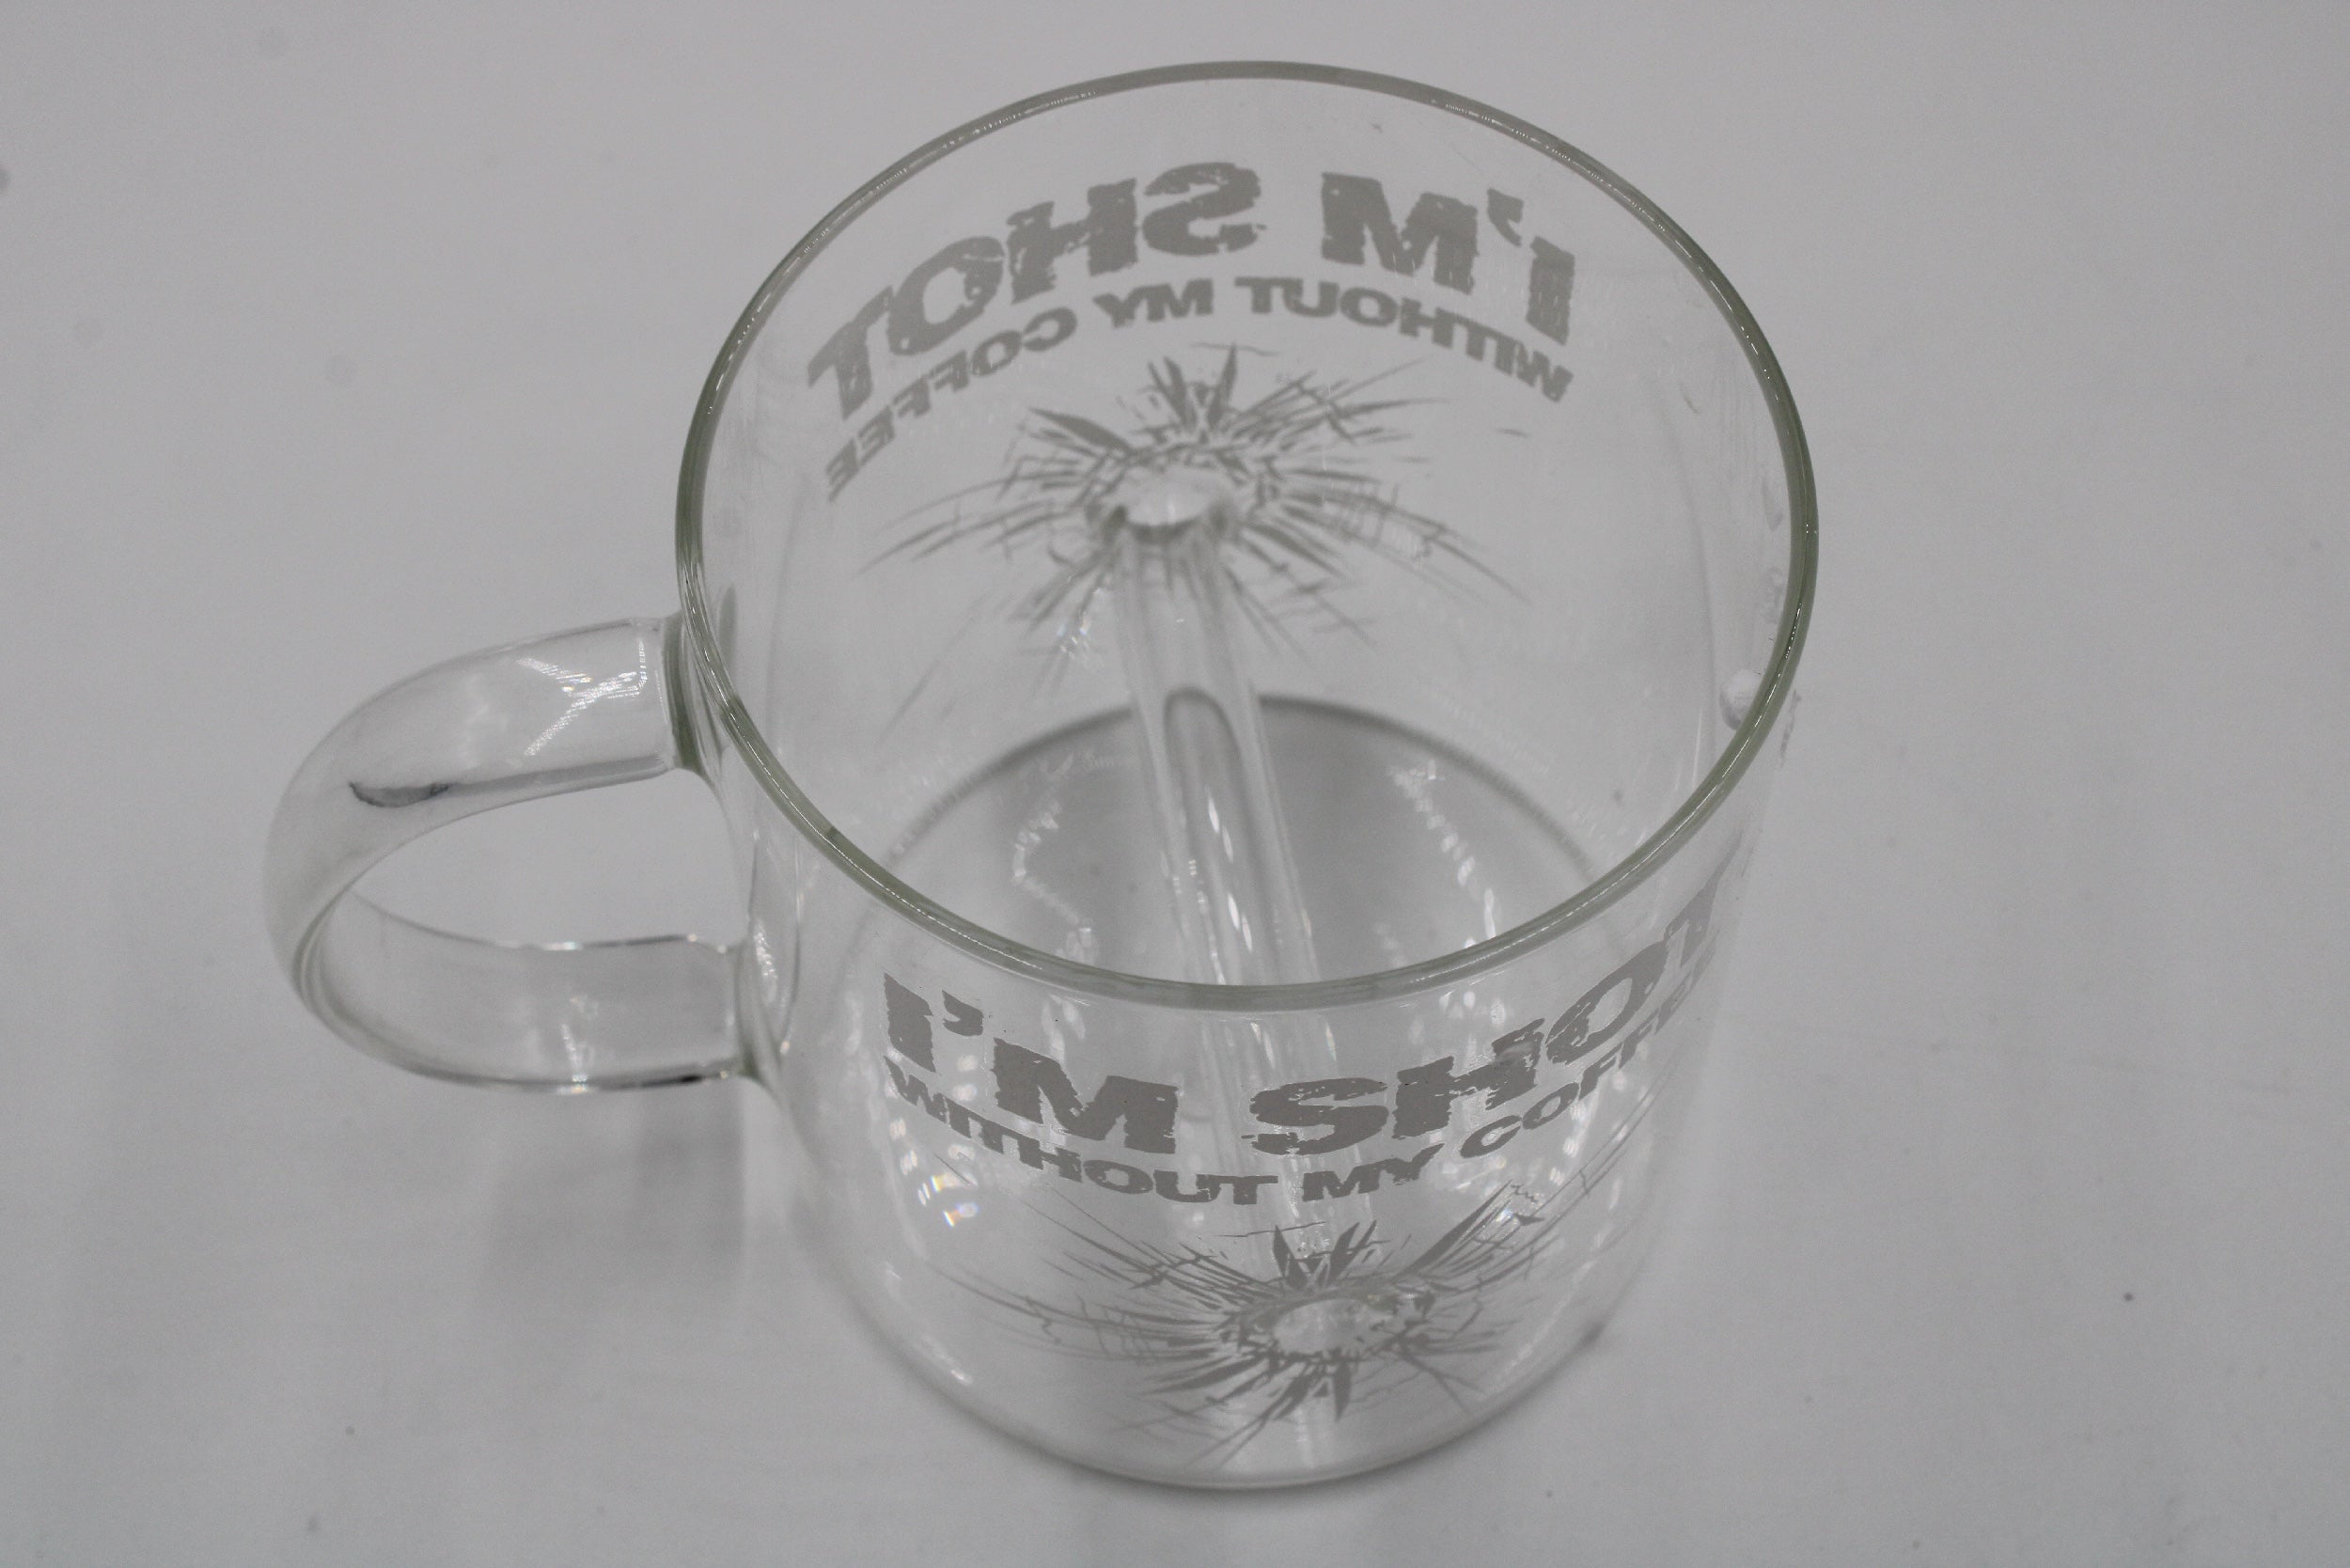 Caliber Gourmet Glass Mug